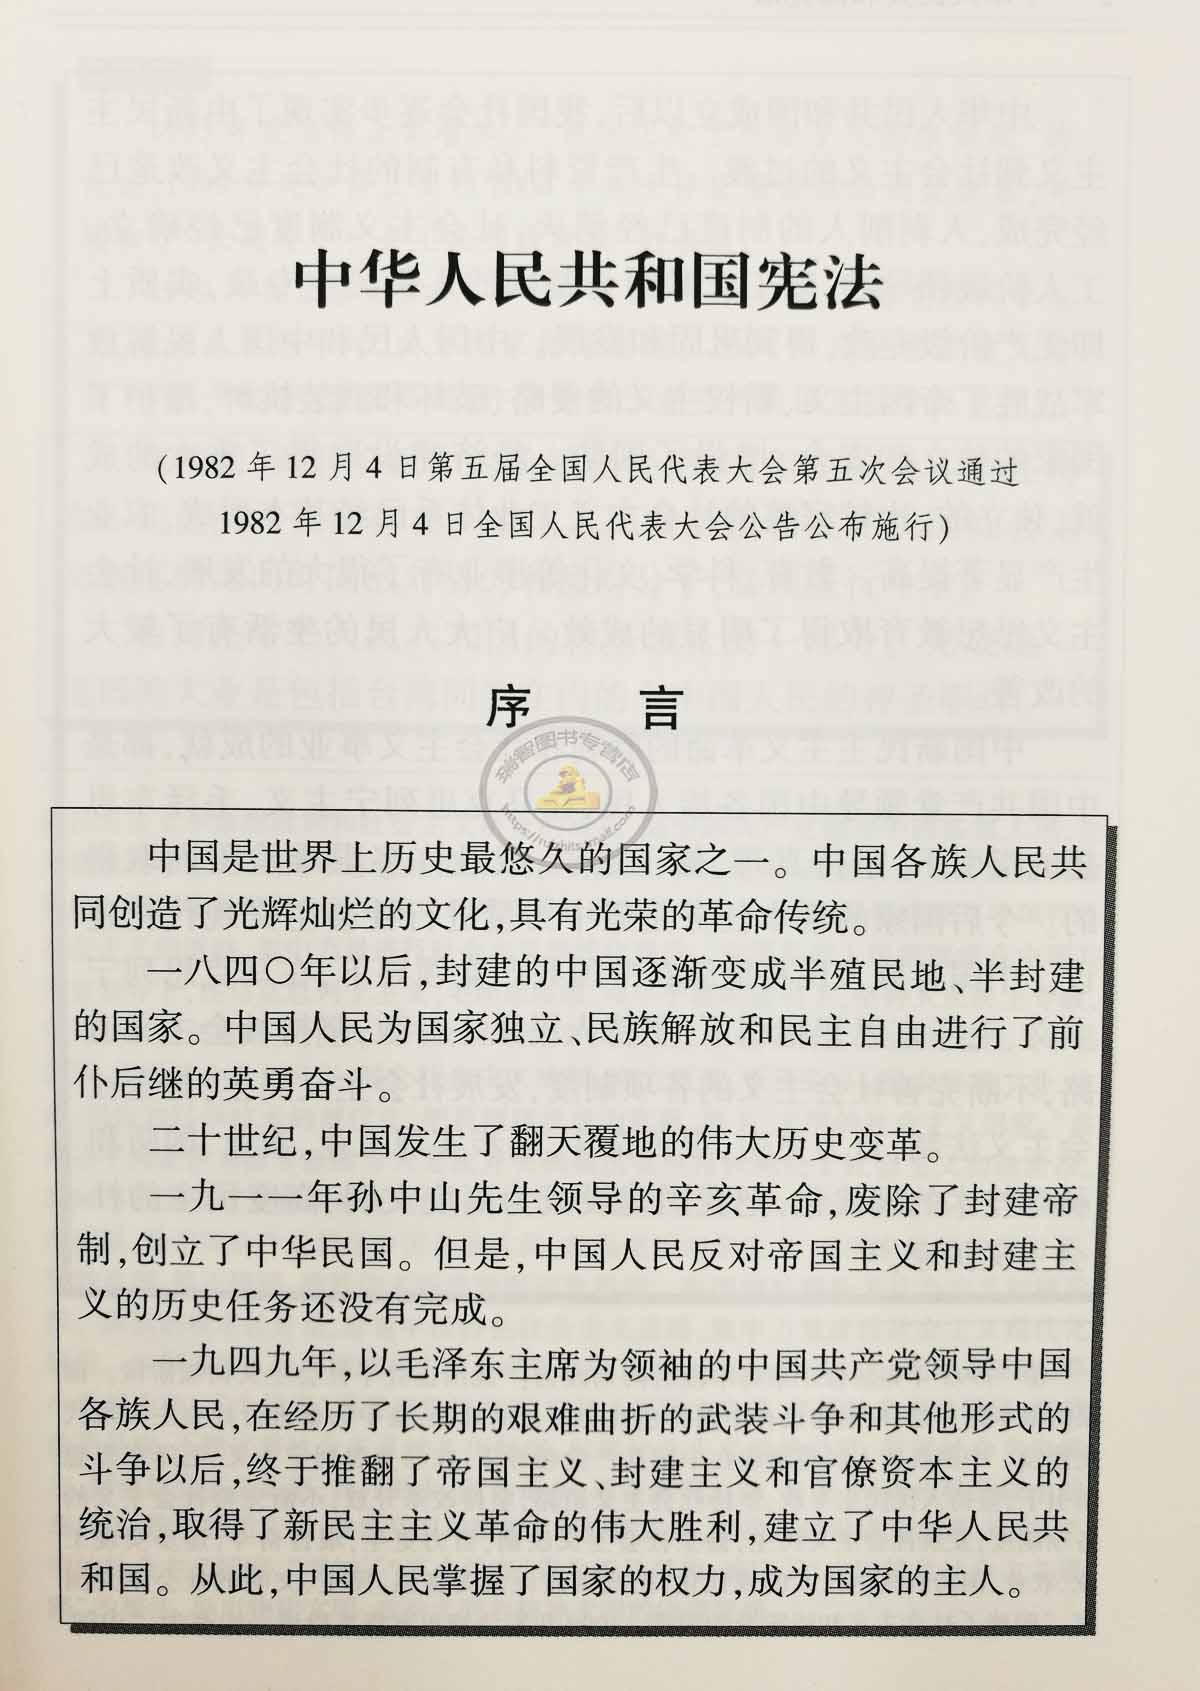 中华人民共和国宪法 (1982年12月4日) 序言 章 总纲 条 国体 第二